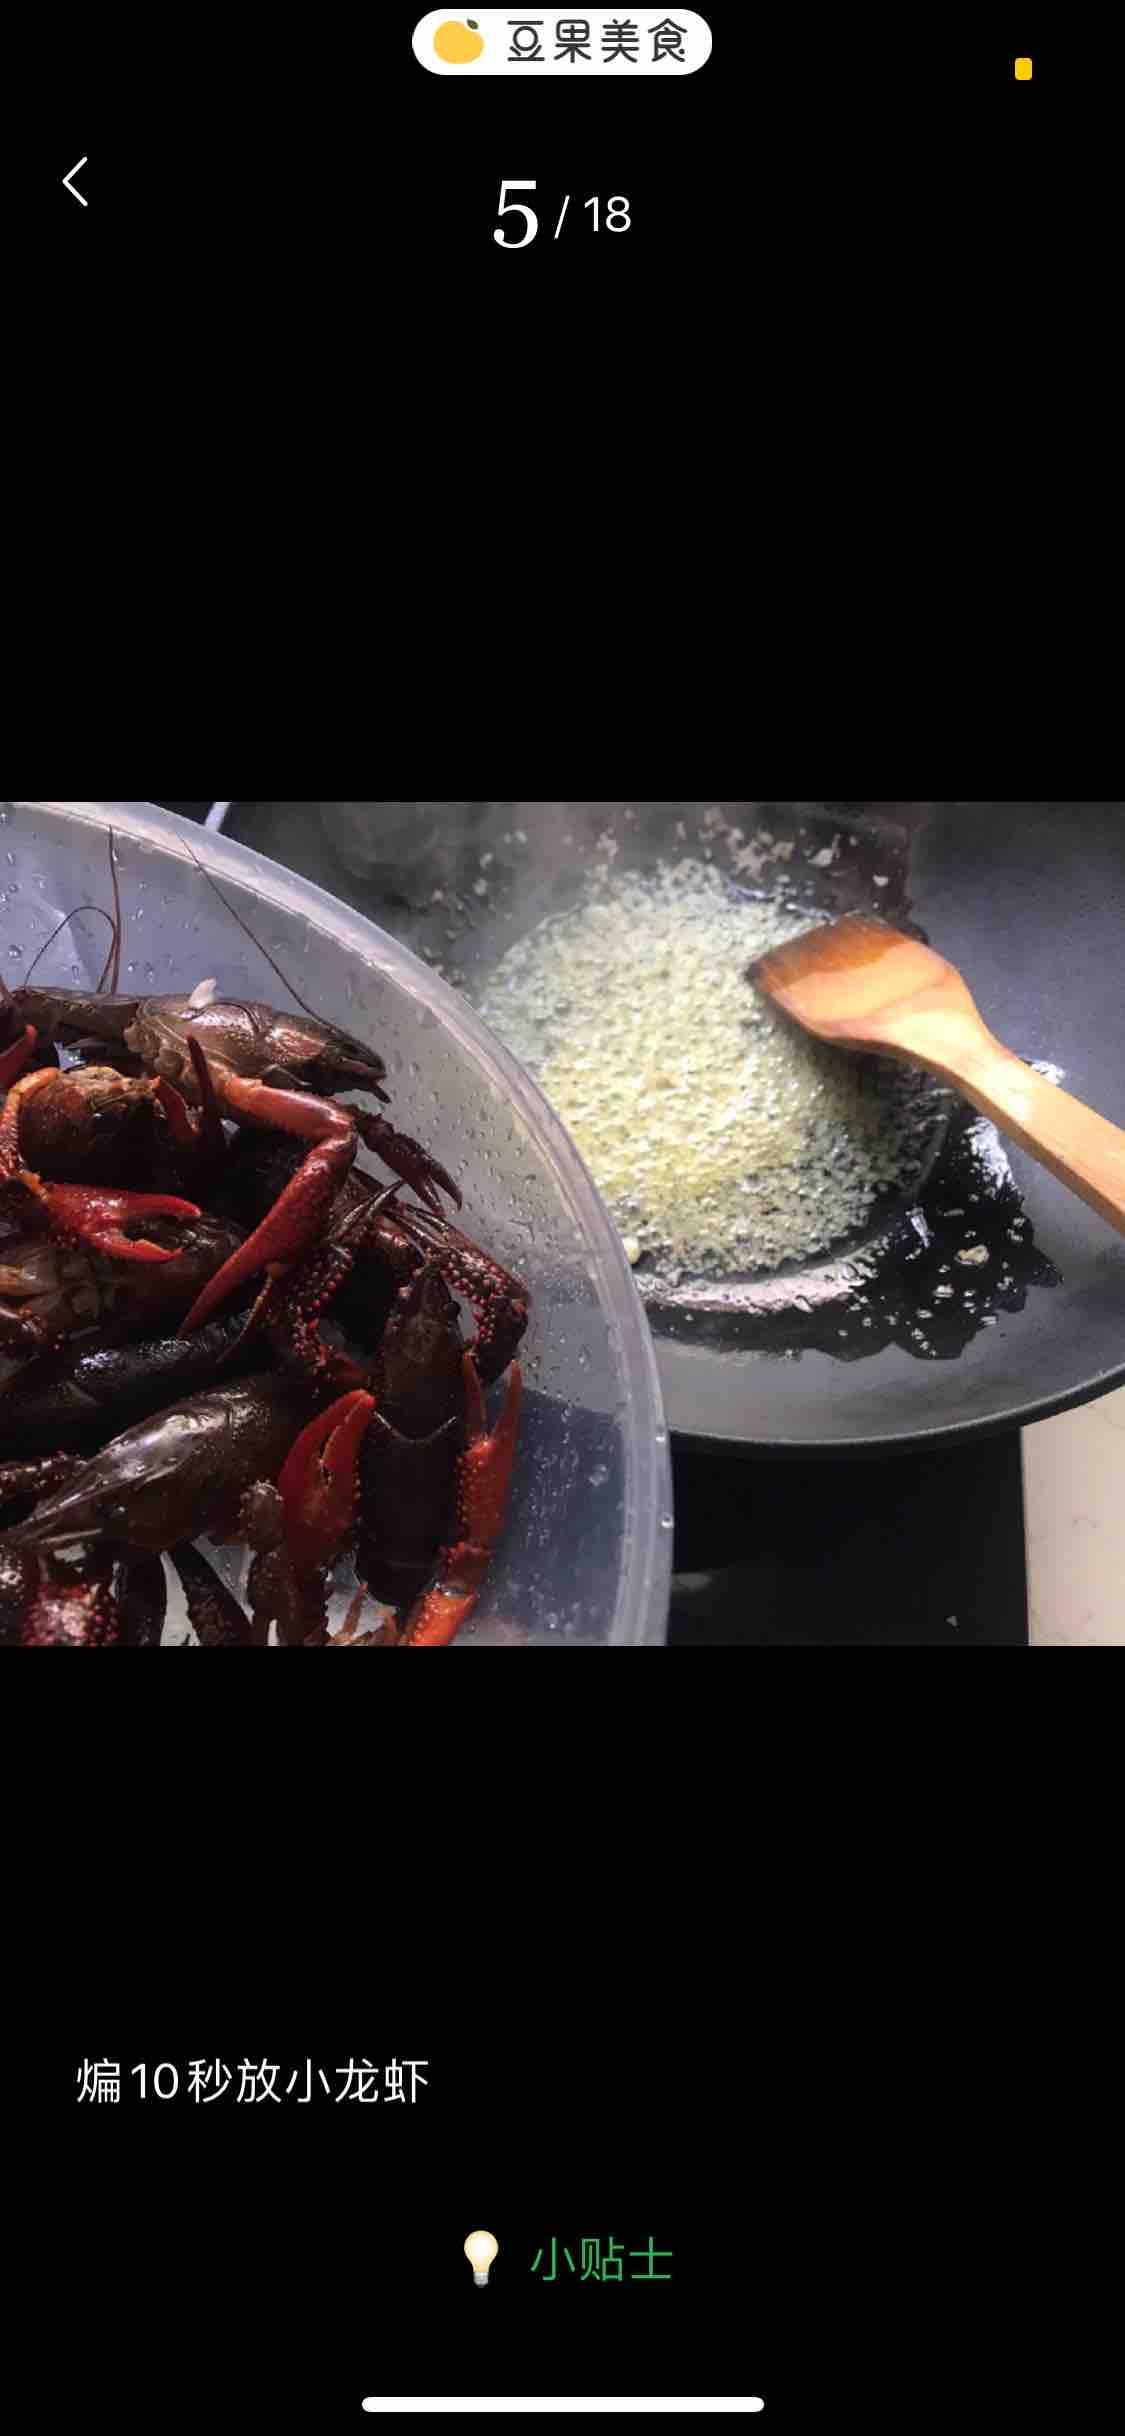 Crayfish recipe